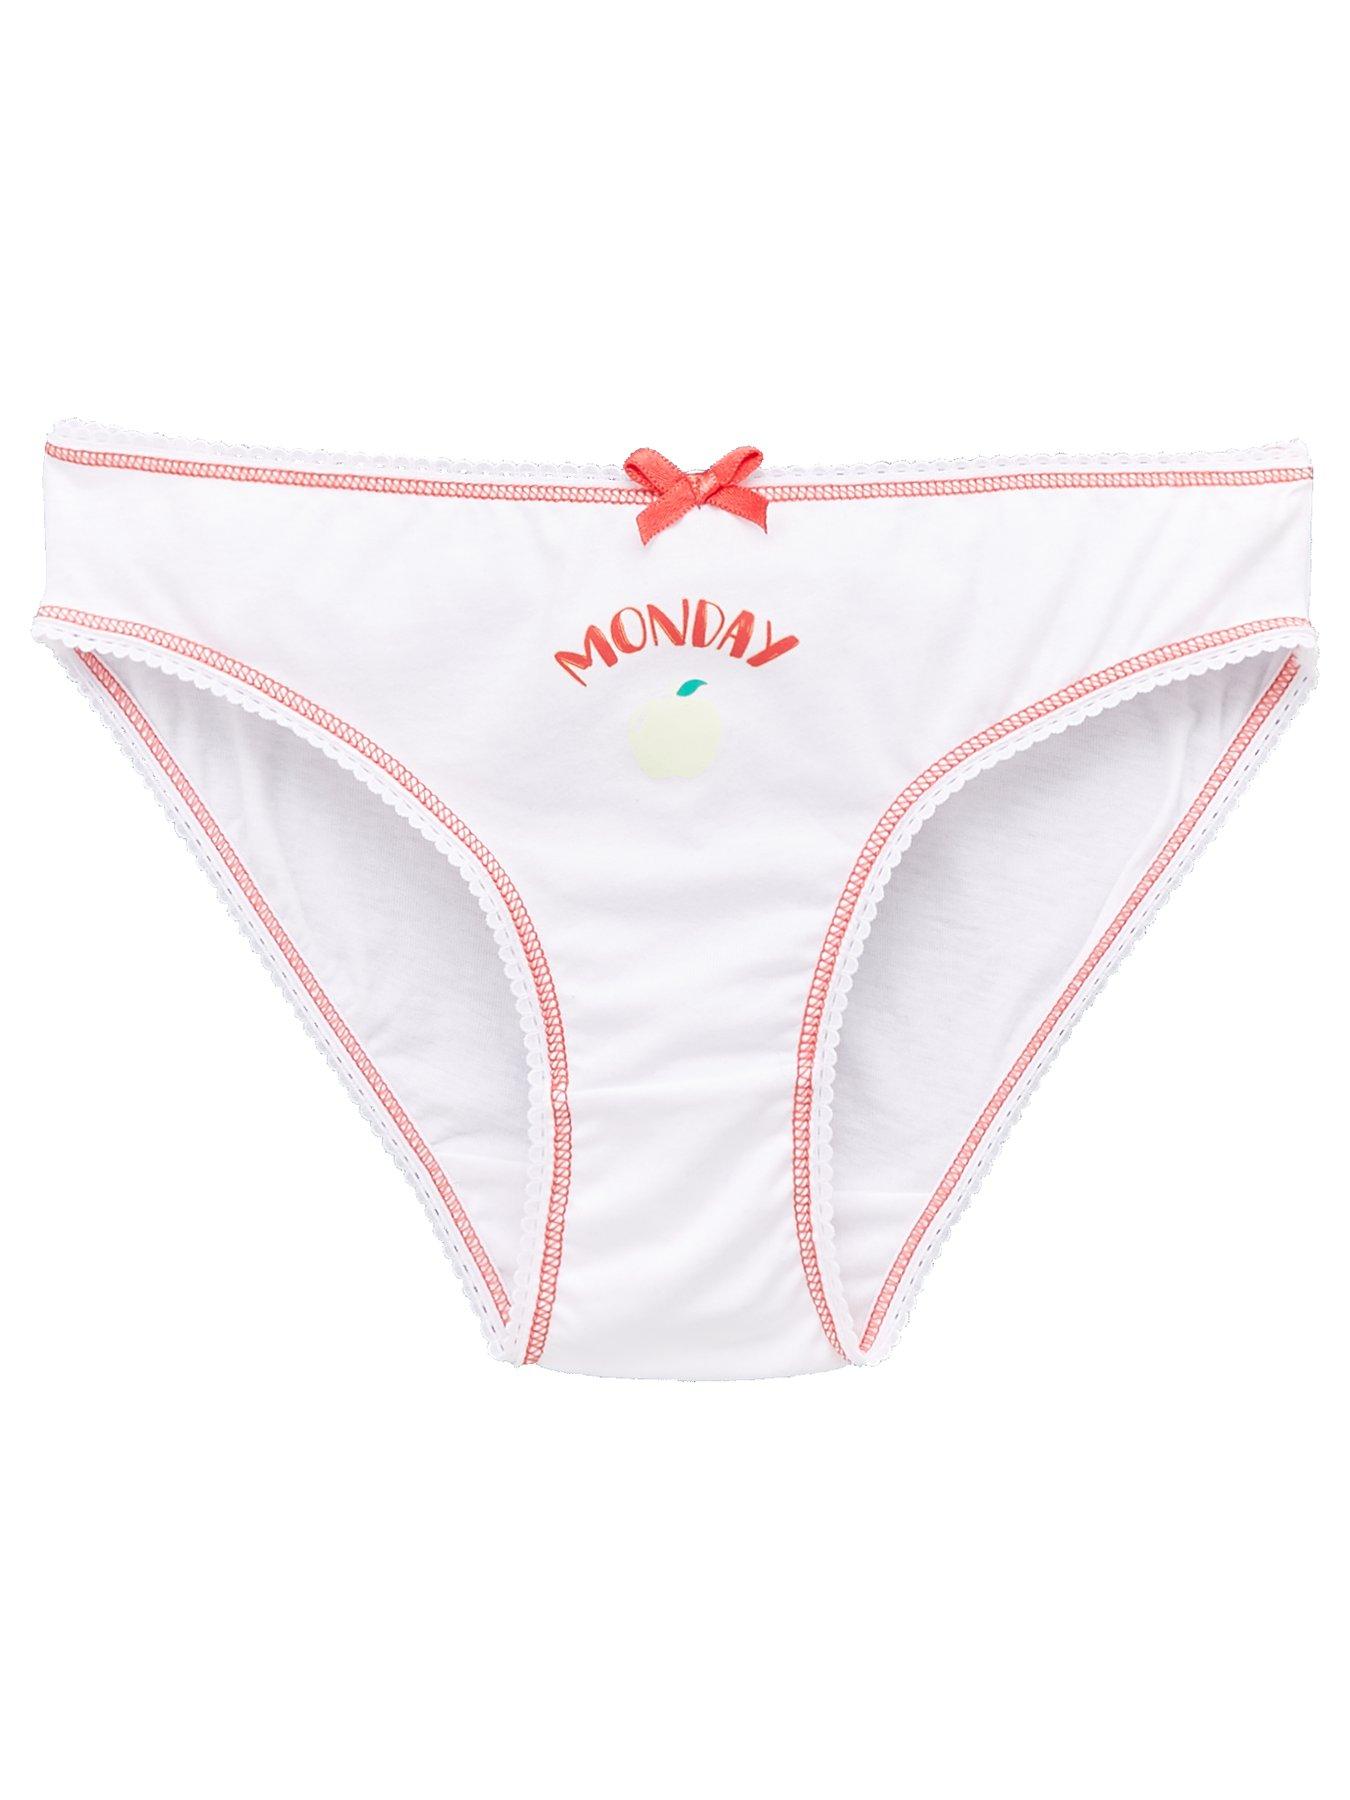 Peppa Pig Girls Potty Training Pants Panties 7-pack Underwear